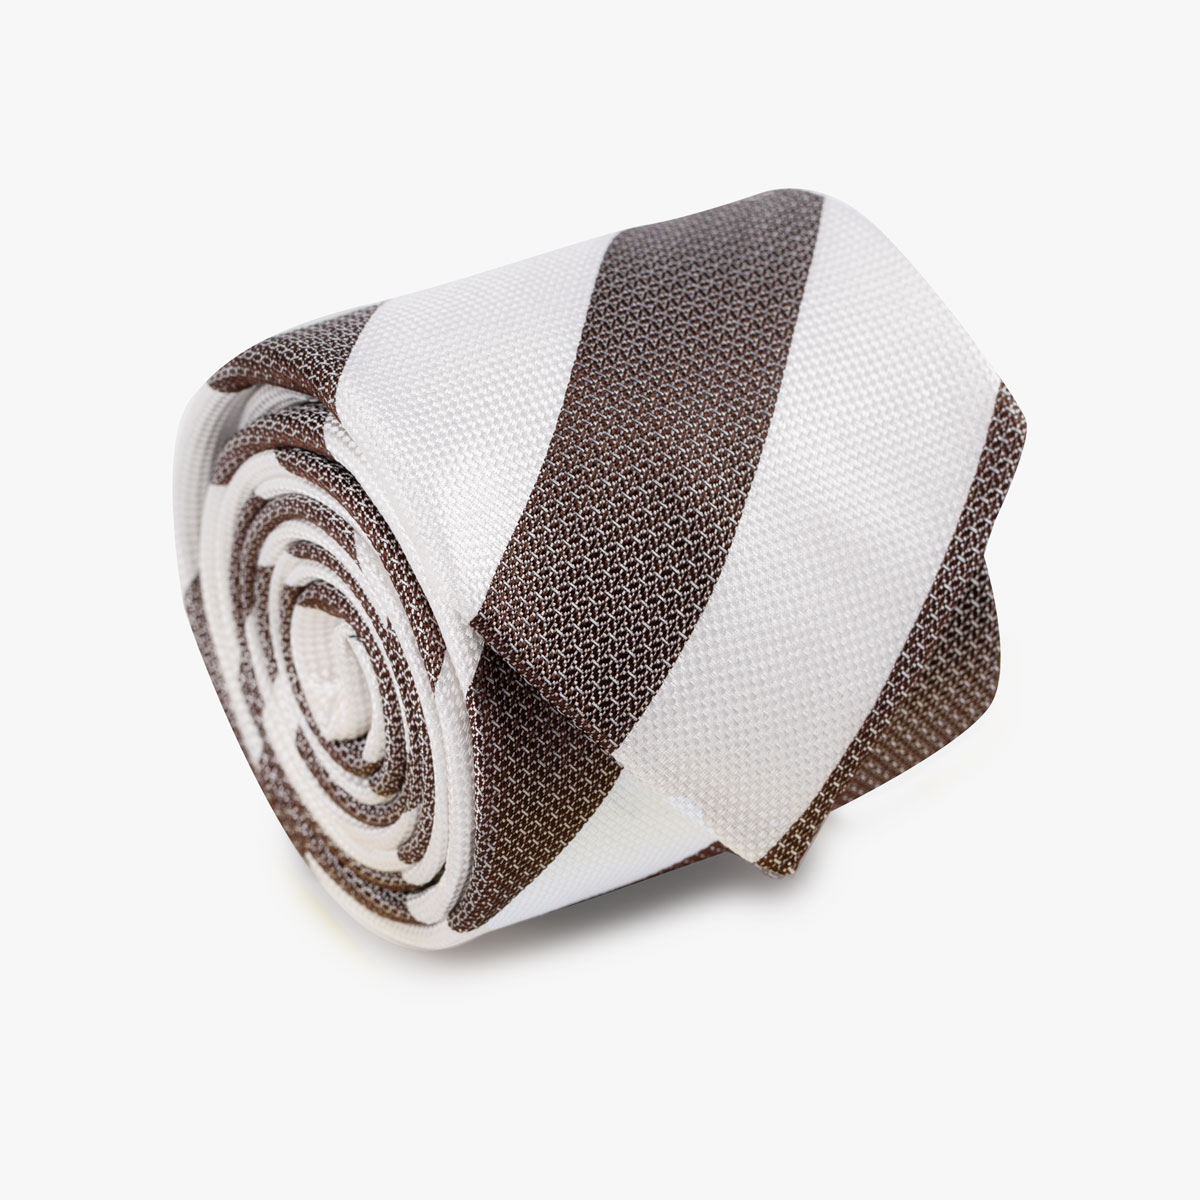 Aufgerollte Krawatte mit breiten Streifen in off-white und braun